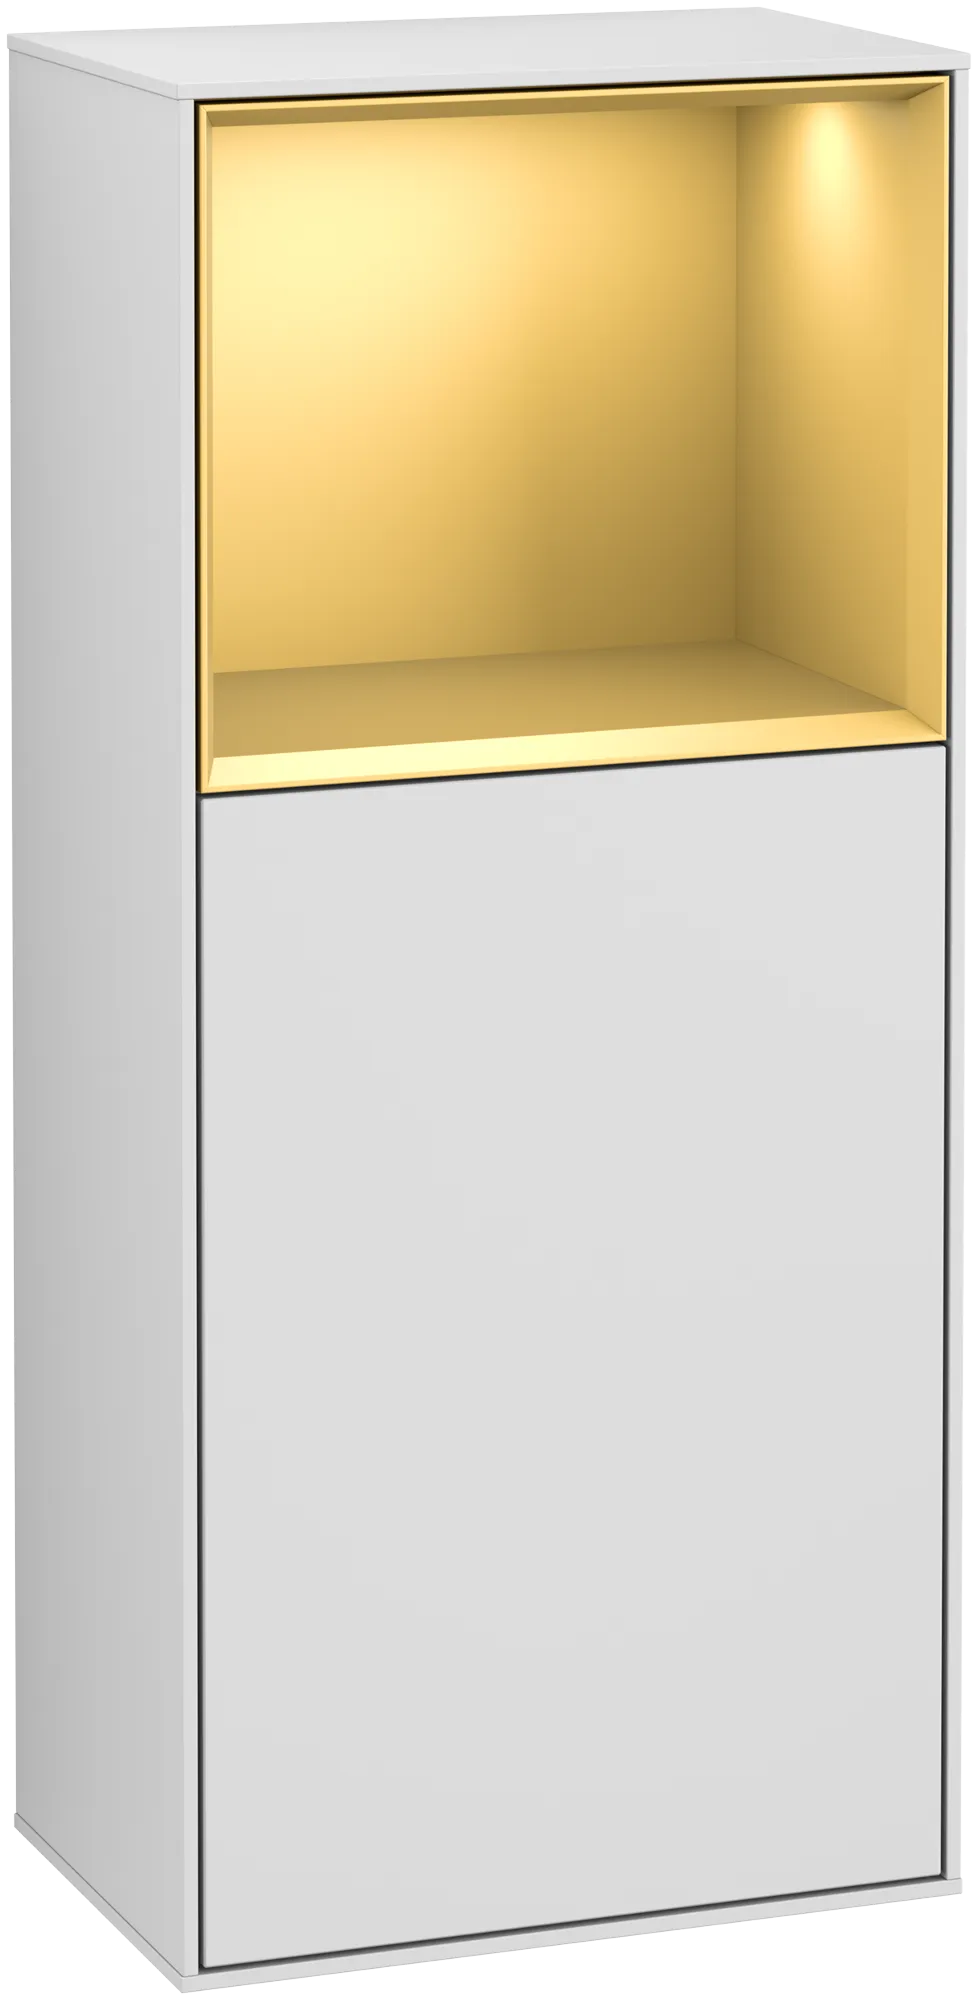 Bild von VILLEROY BOCH Finion Seitenschrank, mit Beleuchtung, 1 Tür, 418 x 936 x 270 mm, White Matt Lacquer / Gold Matt Lacquer #G500HFMT